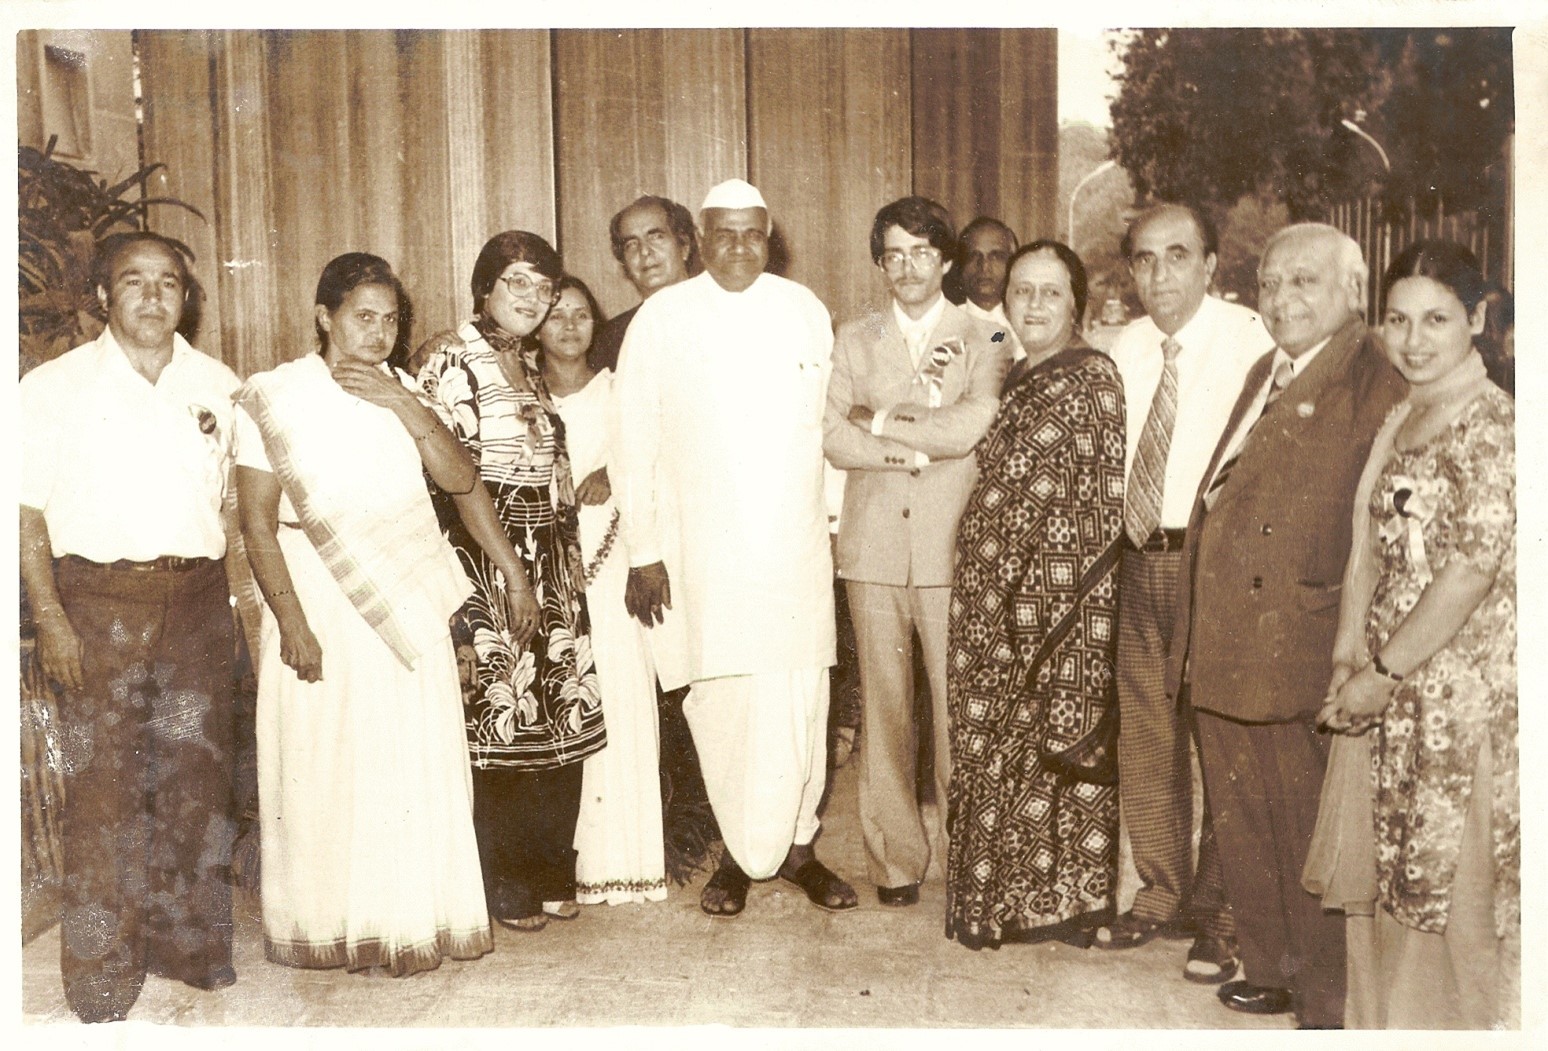 Jagdish Gandhi